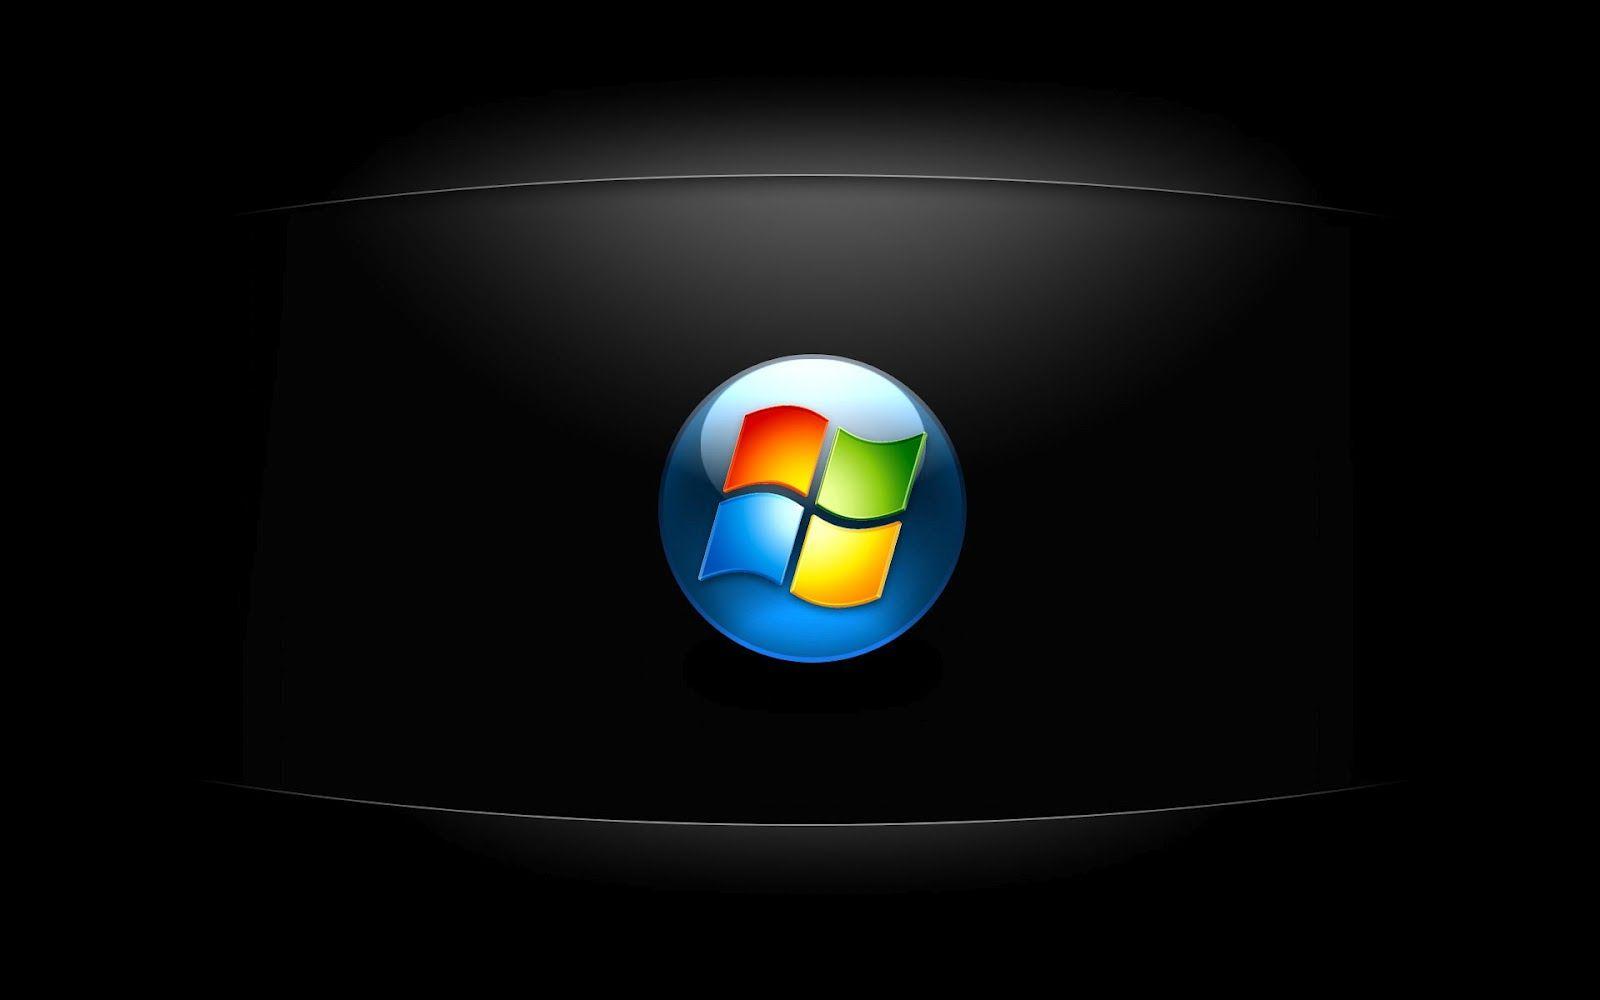 Windows 7 Desktop Background HD Free Download Windows 7 Background